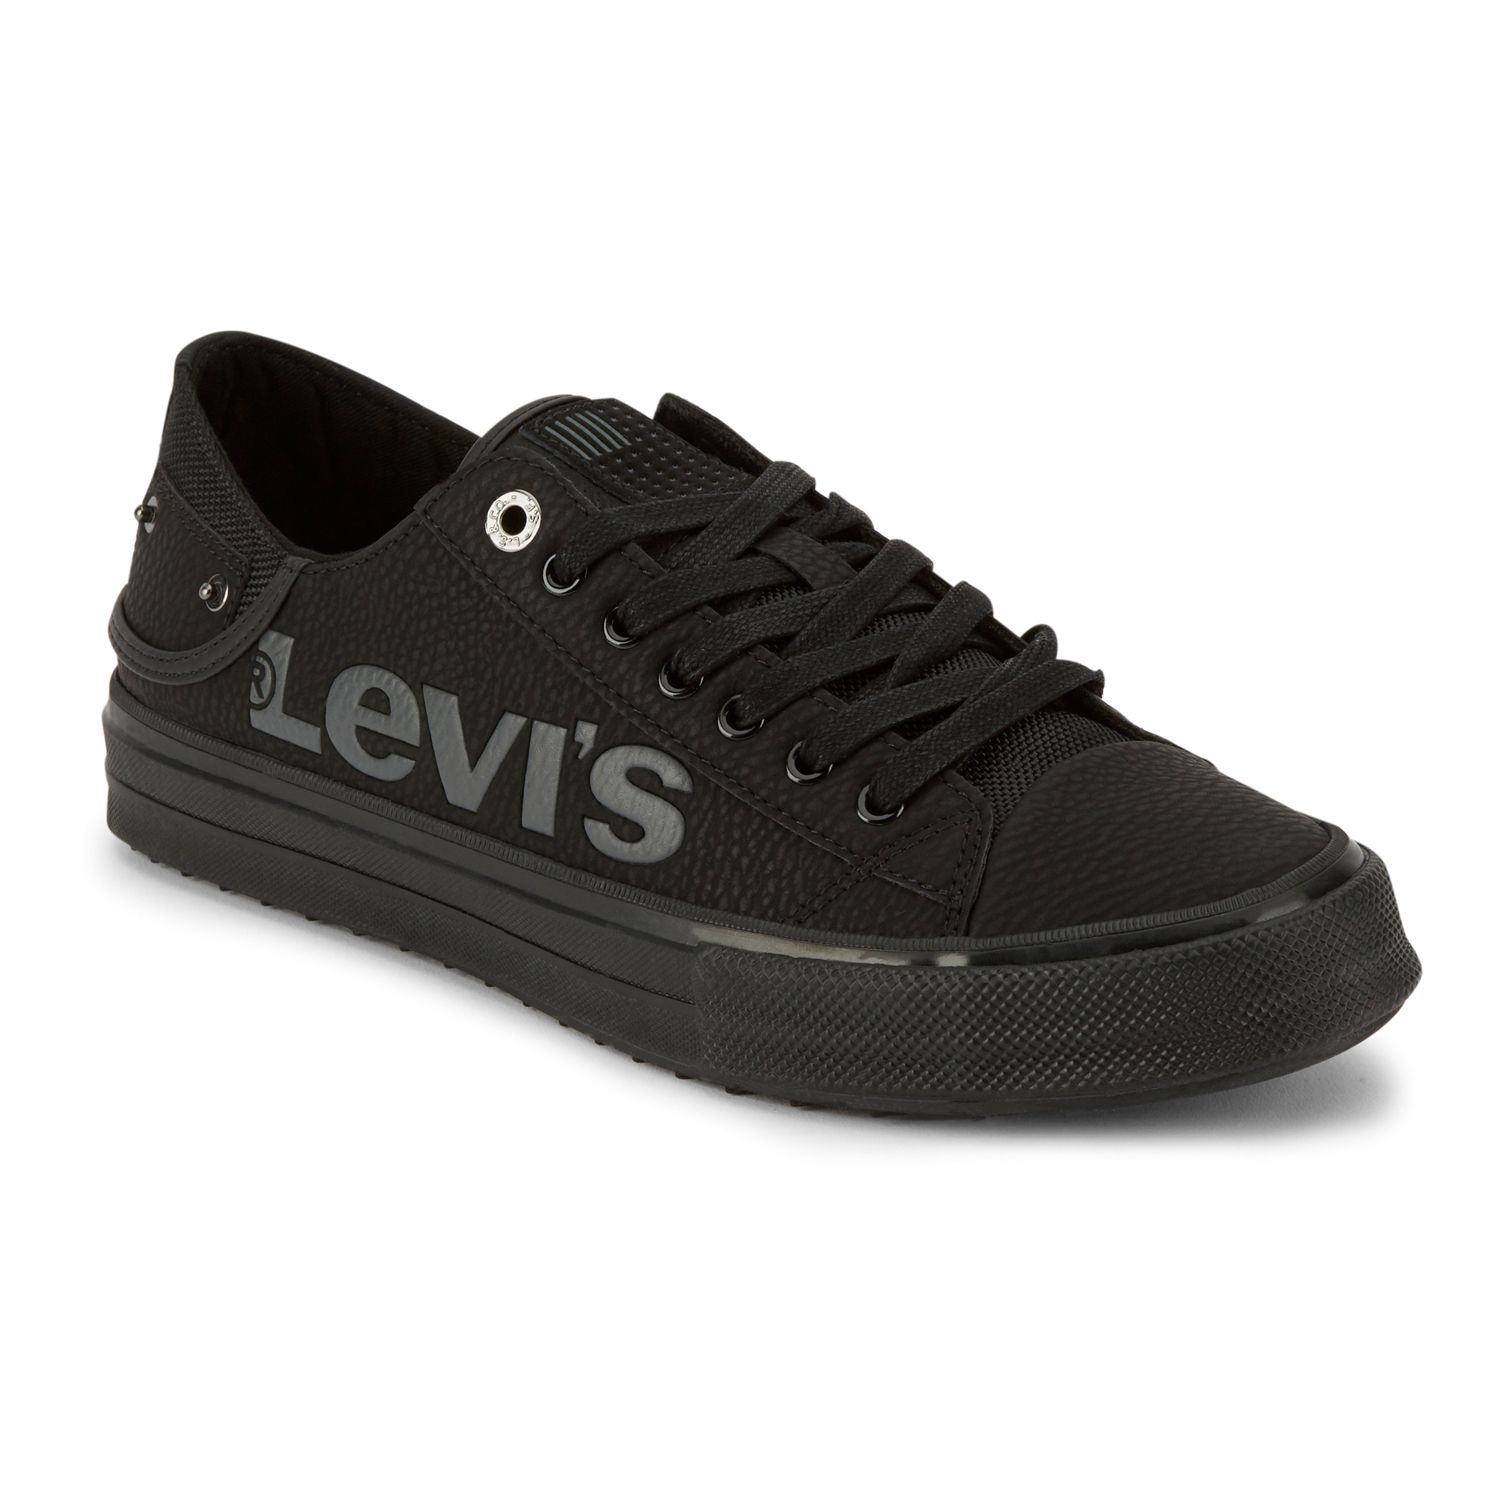 levis tennis shoes